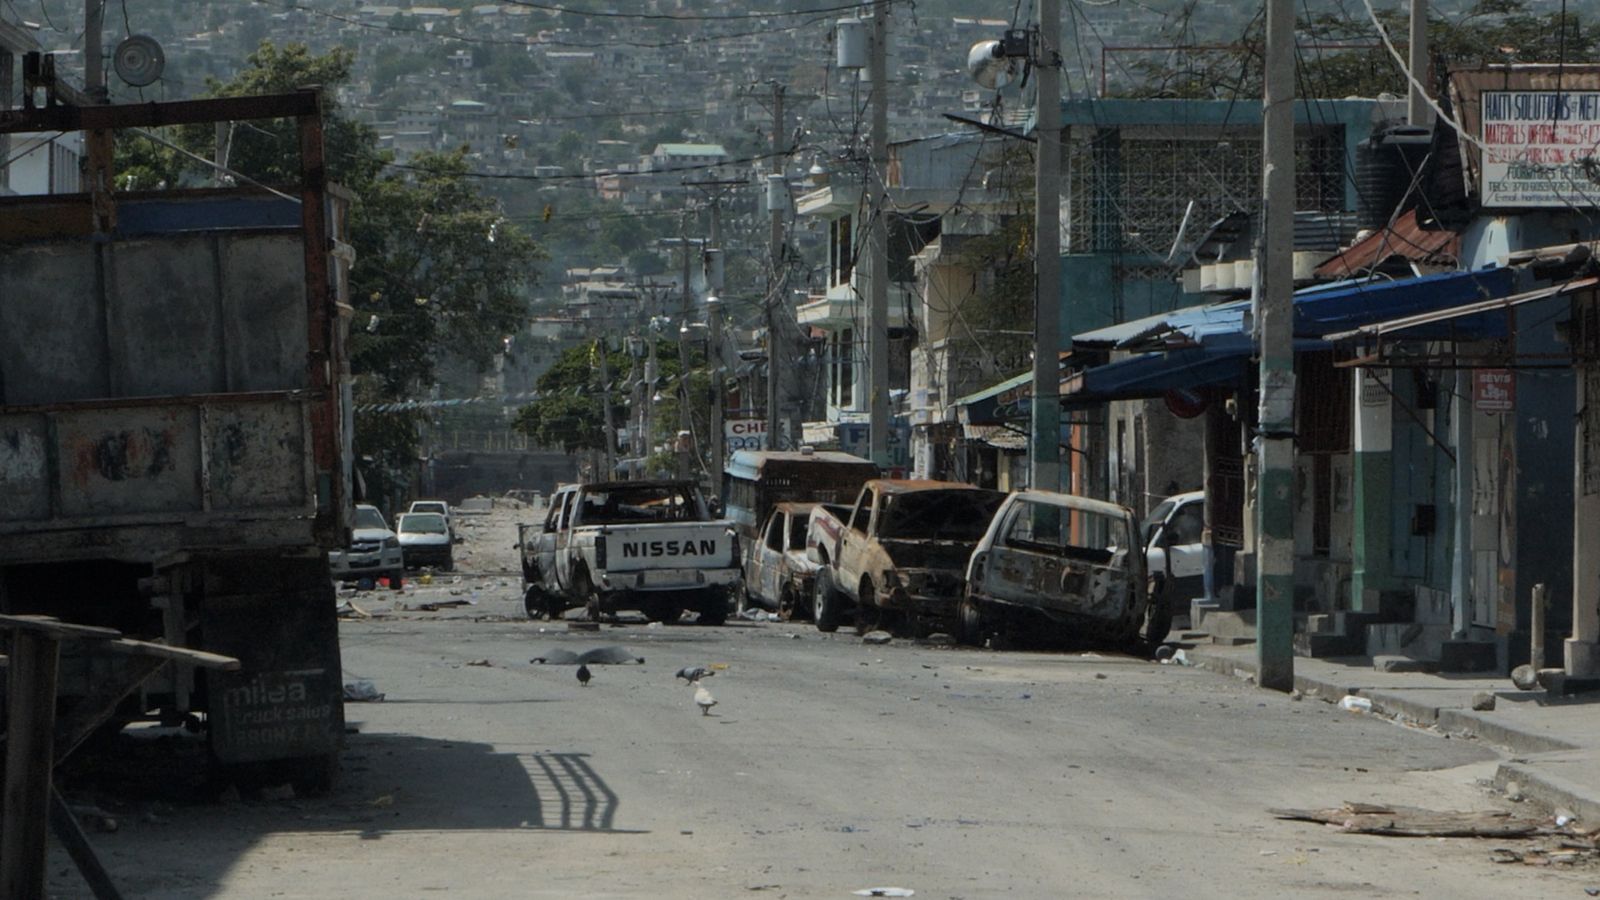 Вихър от насилие и бедност - гладуващи семейства се приютяват от бойното поле на столицата на Хаити